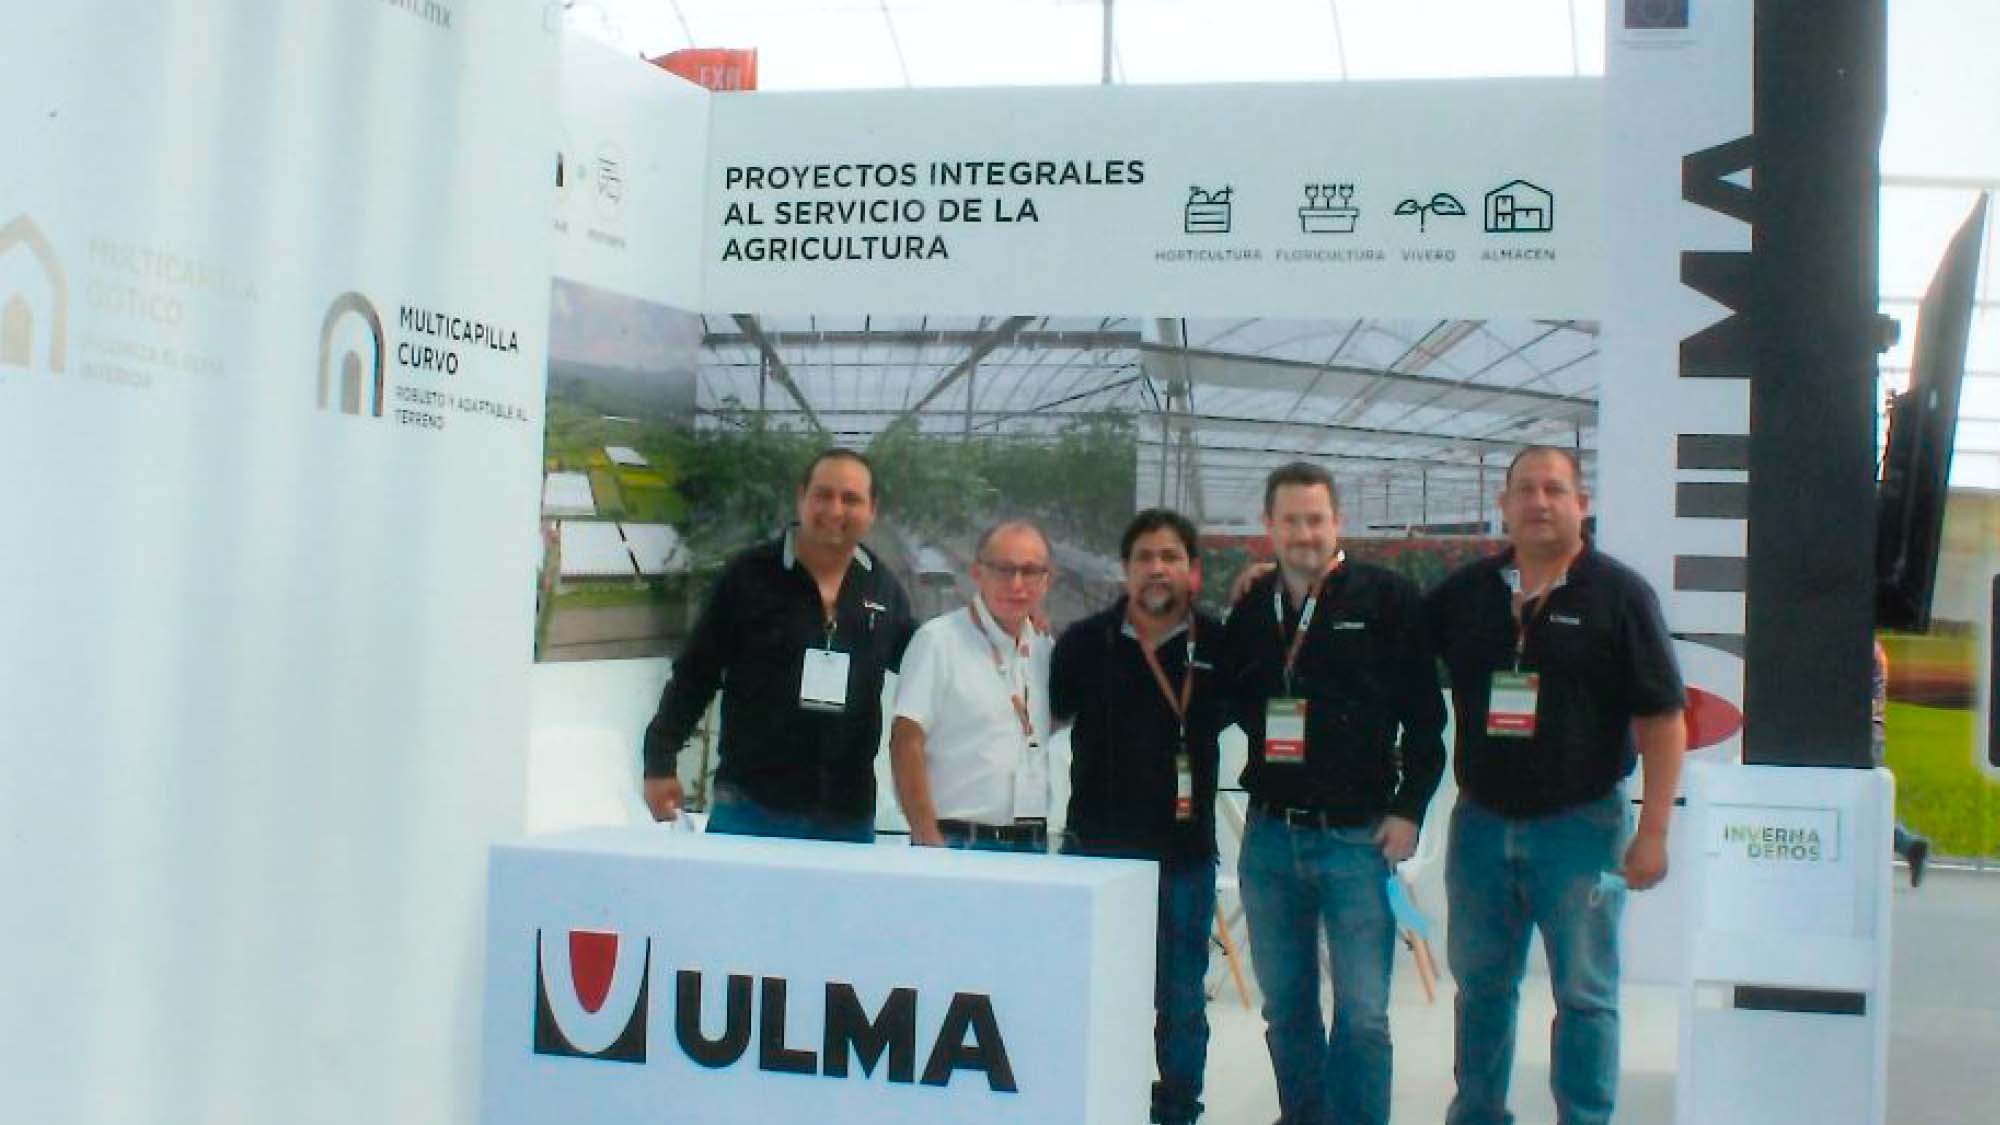 ULMA Agricola Expo AgroAlimentaria Guanajuato 2021ean 